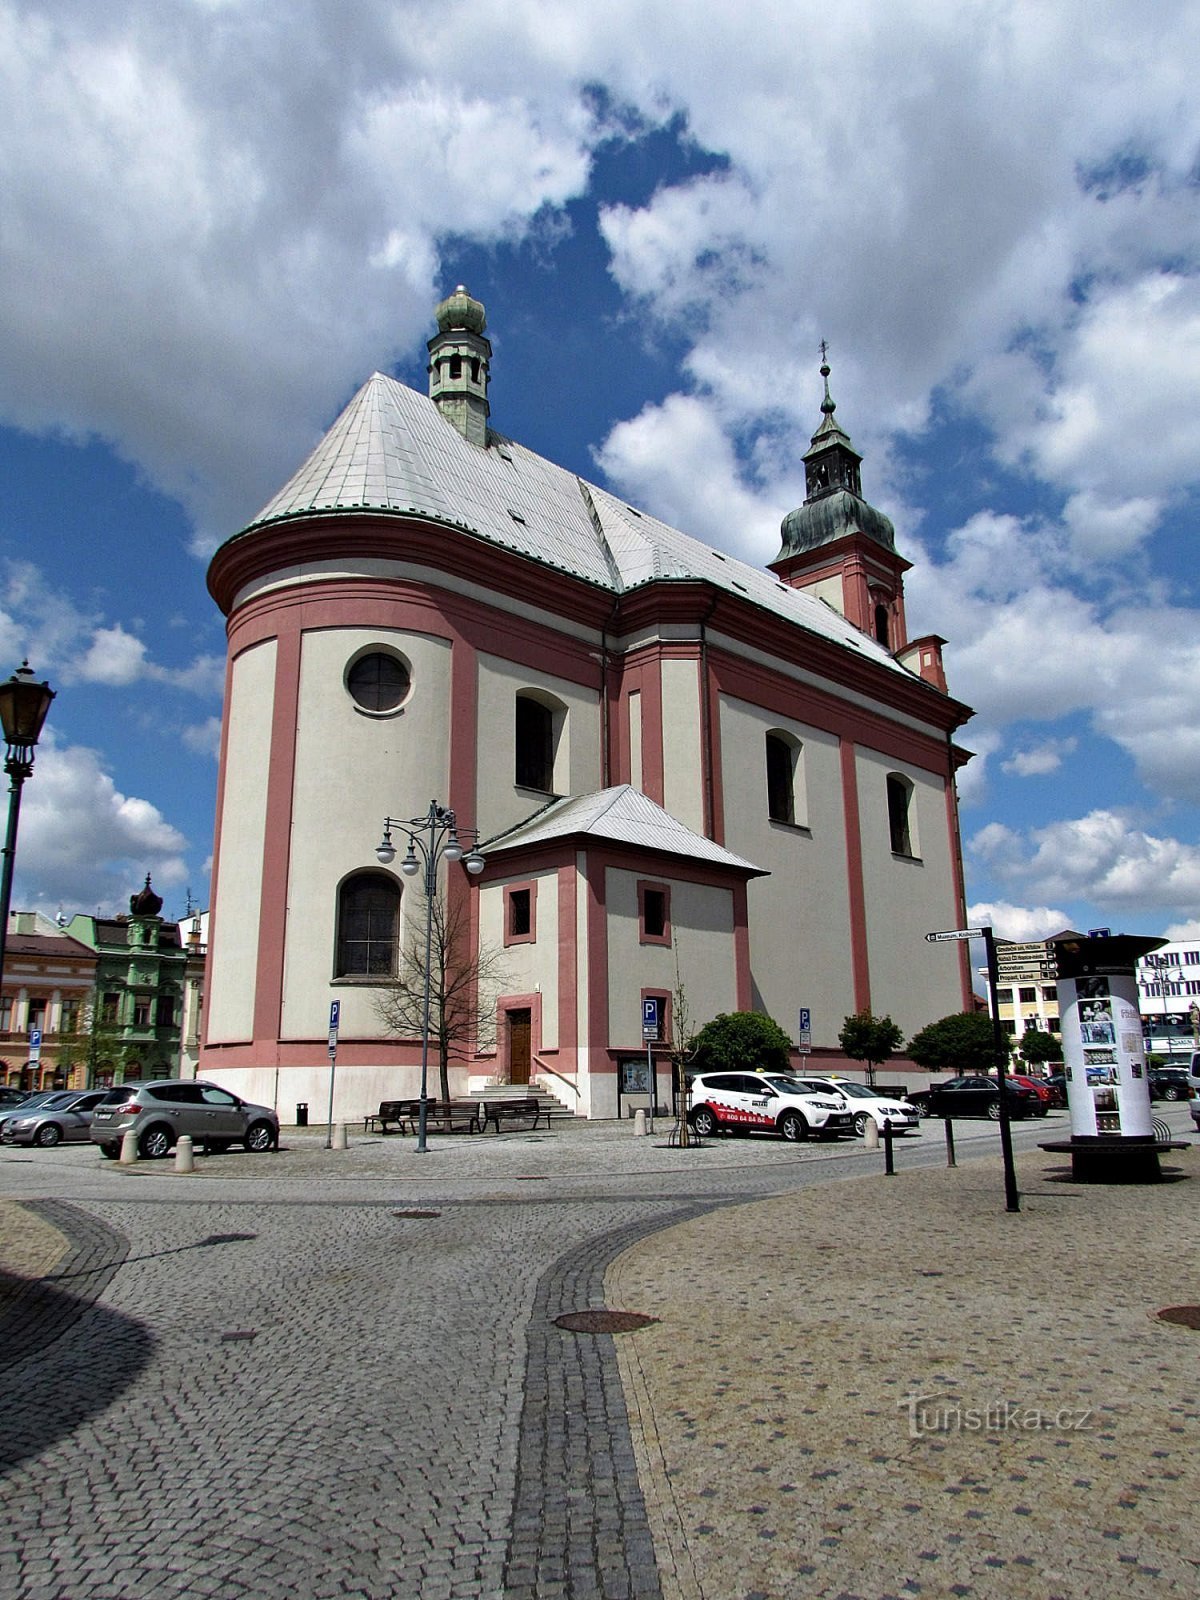 Nhà thờ Hranicky nơi chặt đầu của Thánh John the Baptist